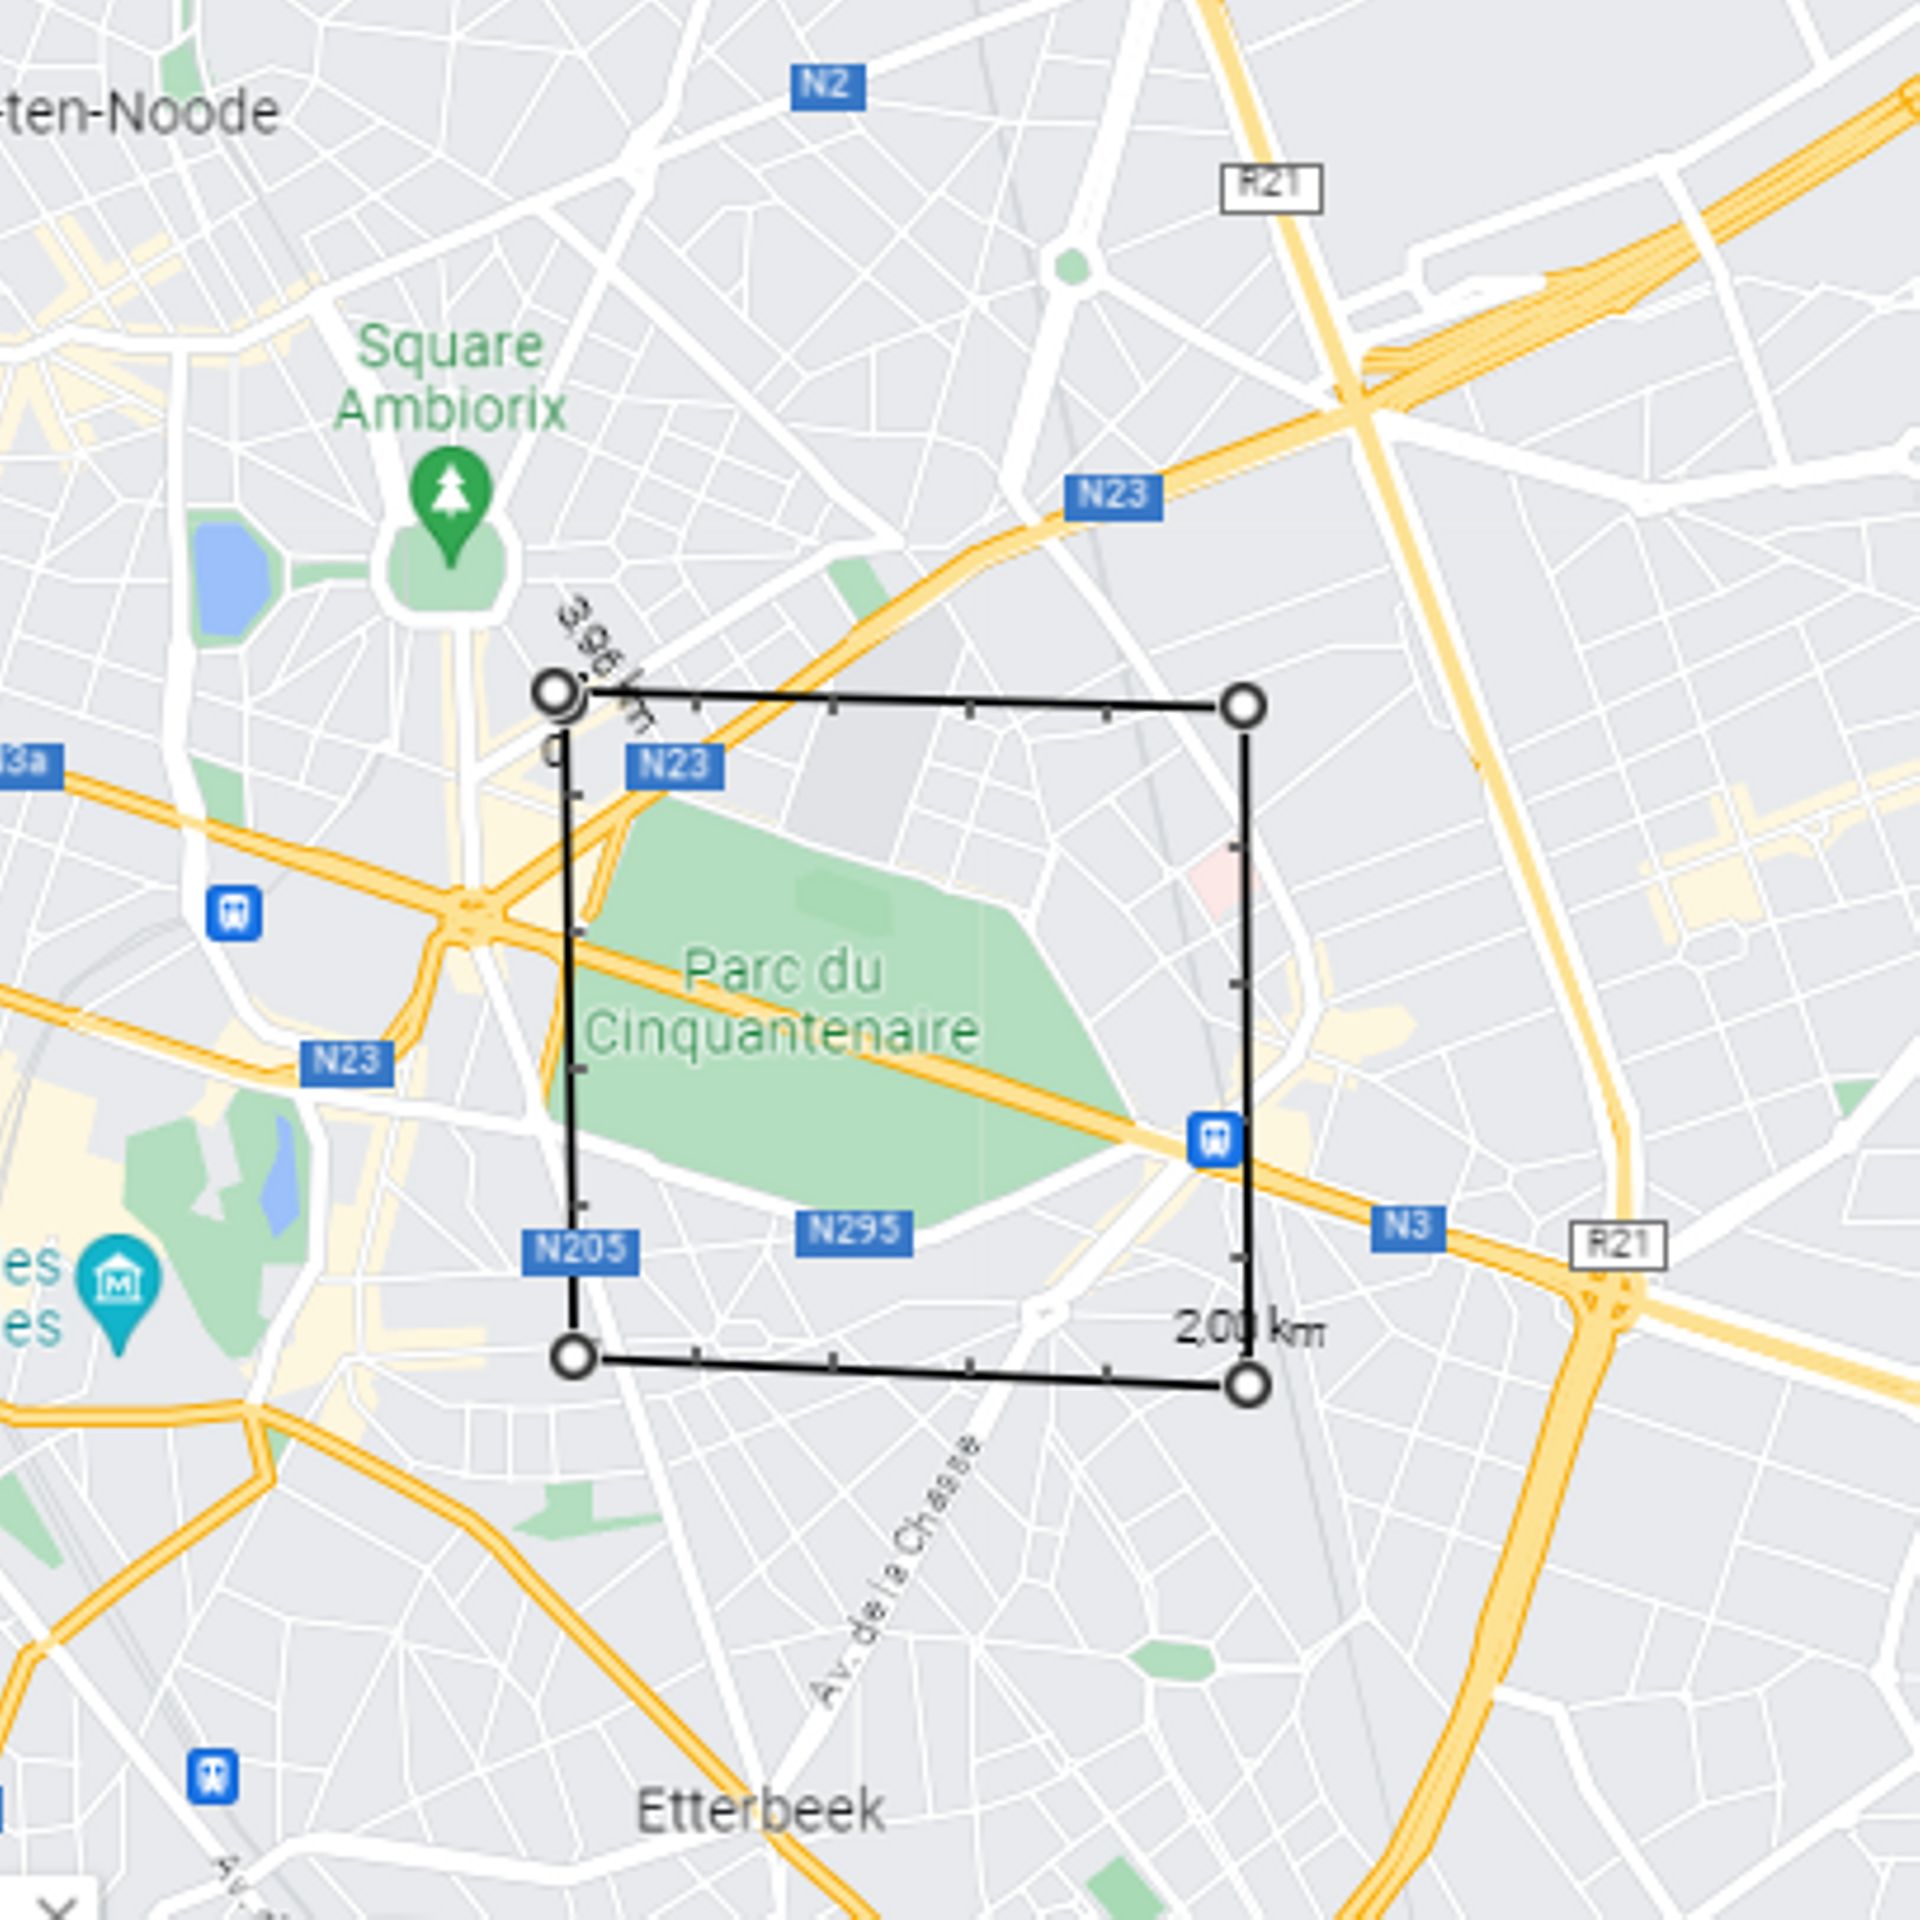 Estimation d’une distance d’environ 1 km x 1 km à Bruxelles.